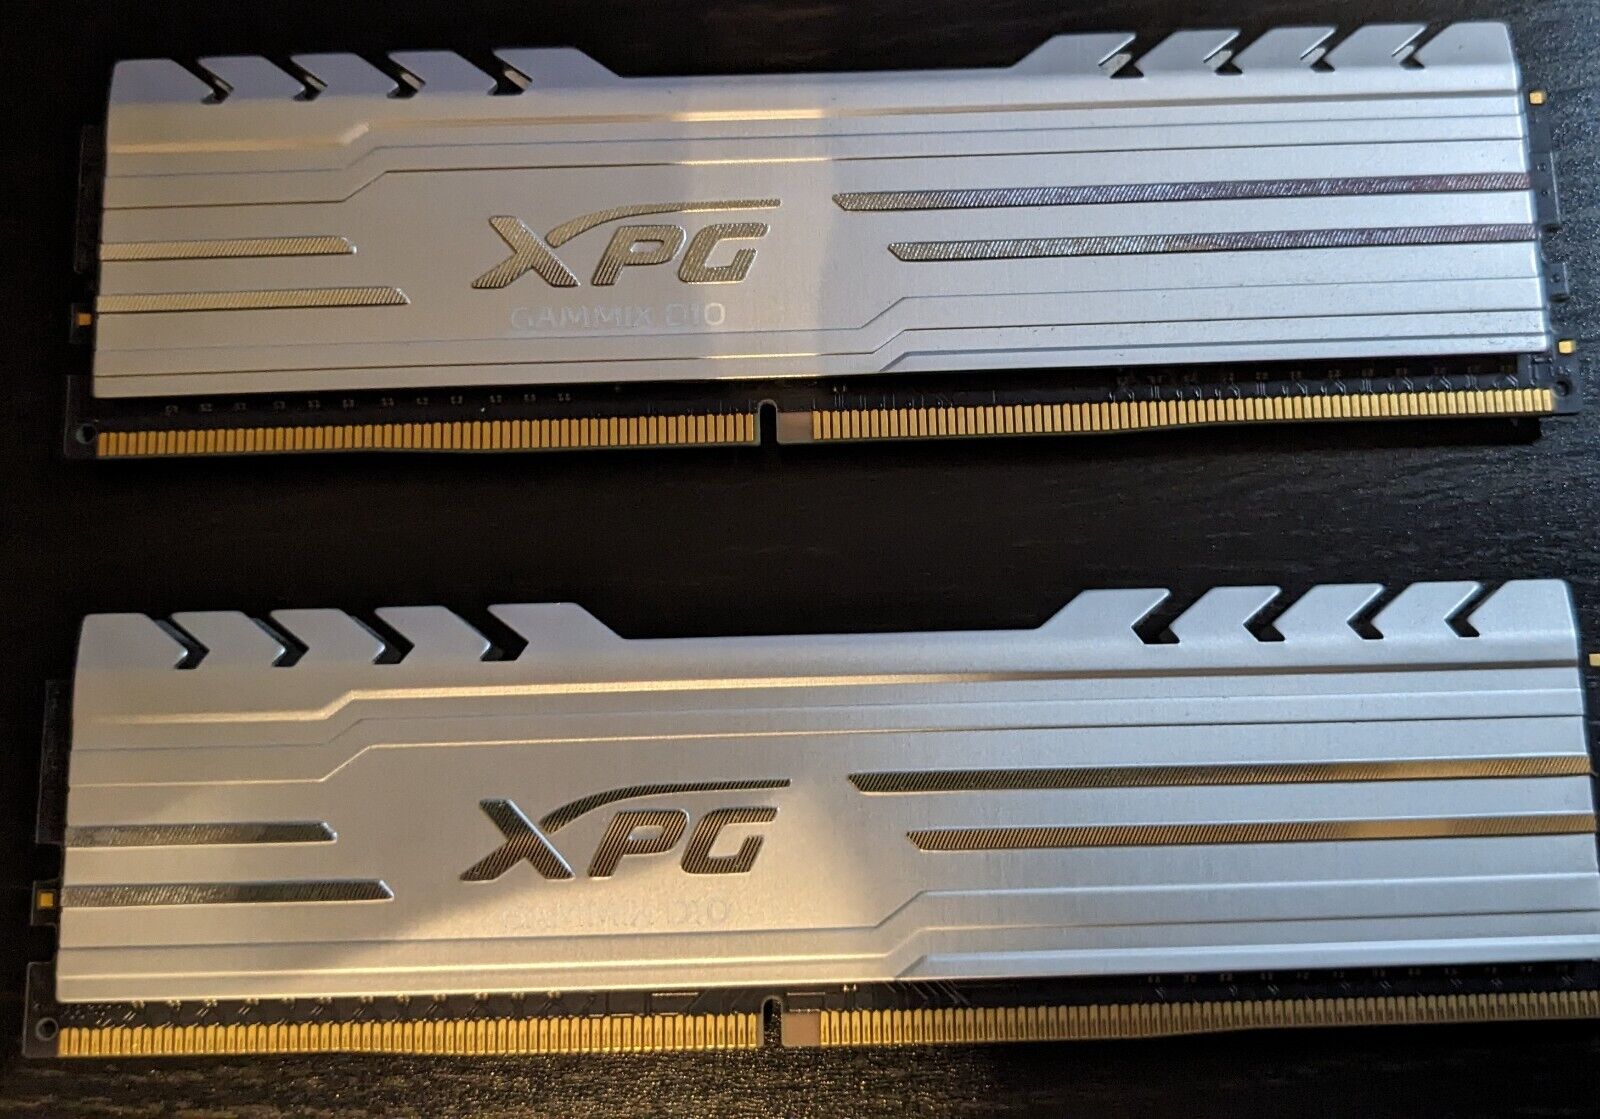 ADATA XPG Gammix D10 16 GB Silver DDR4 3000 RAM (2x 8GB sticks) Used and tested.